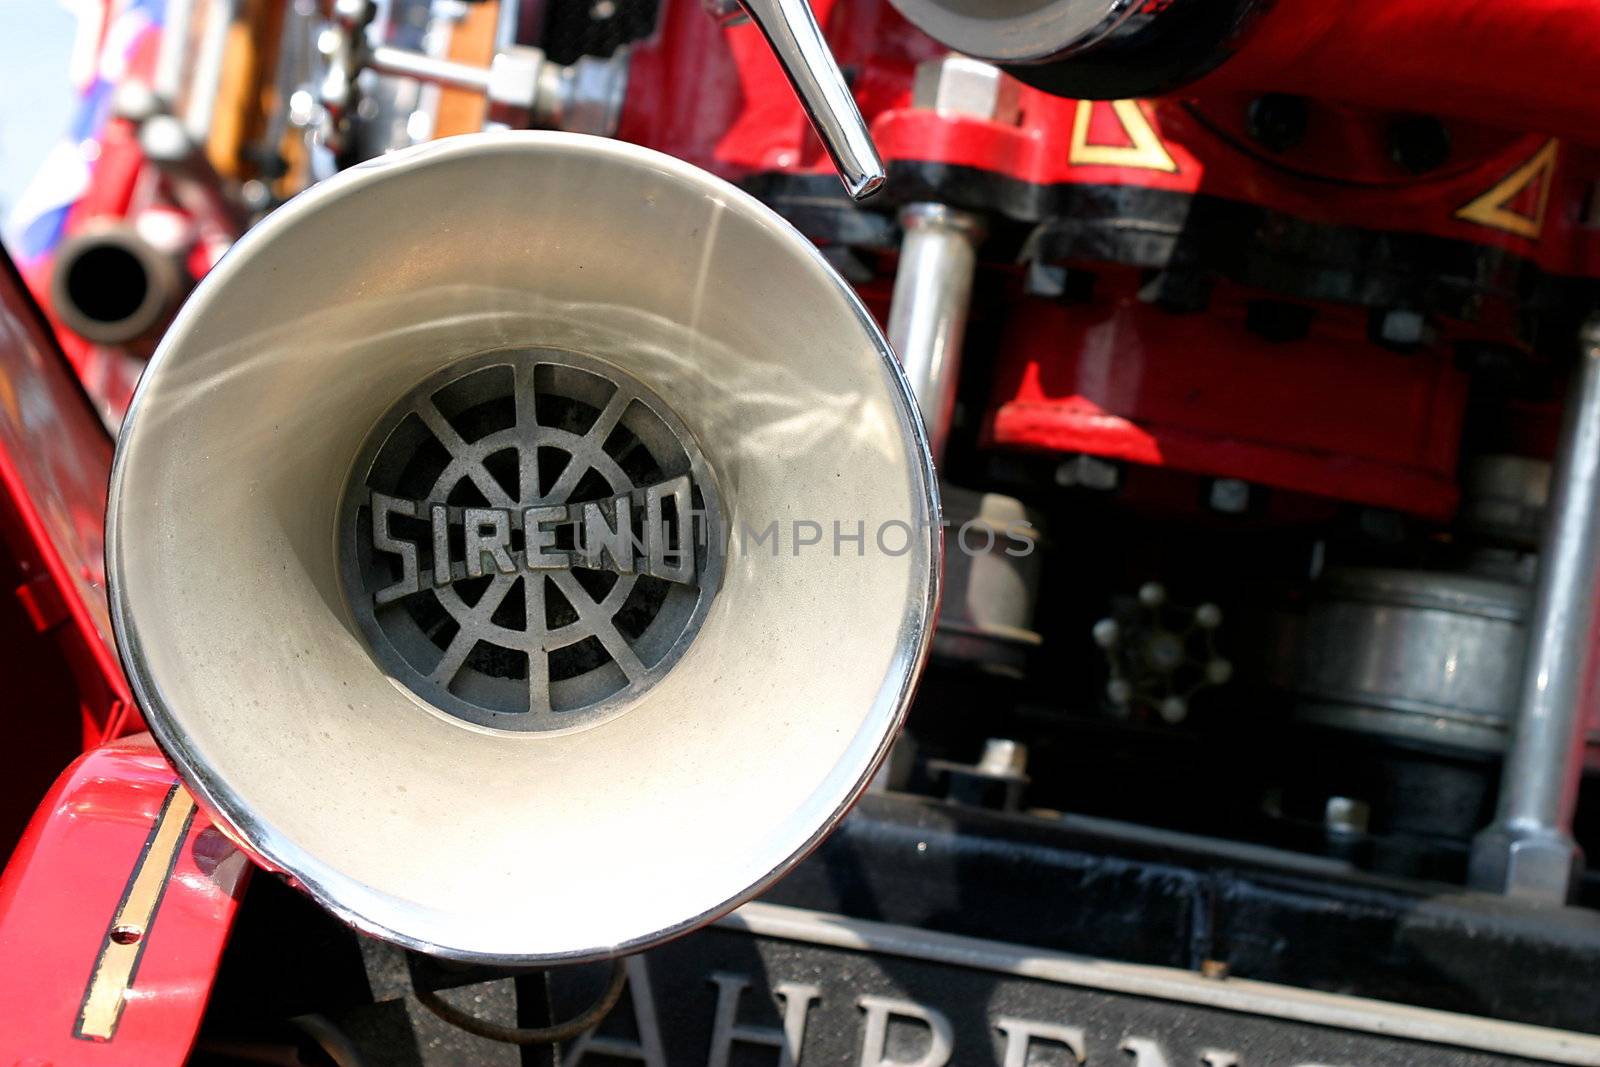 Close up of an old fire truck siren.